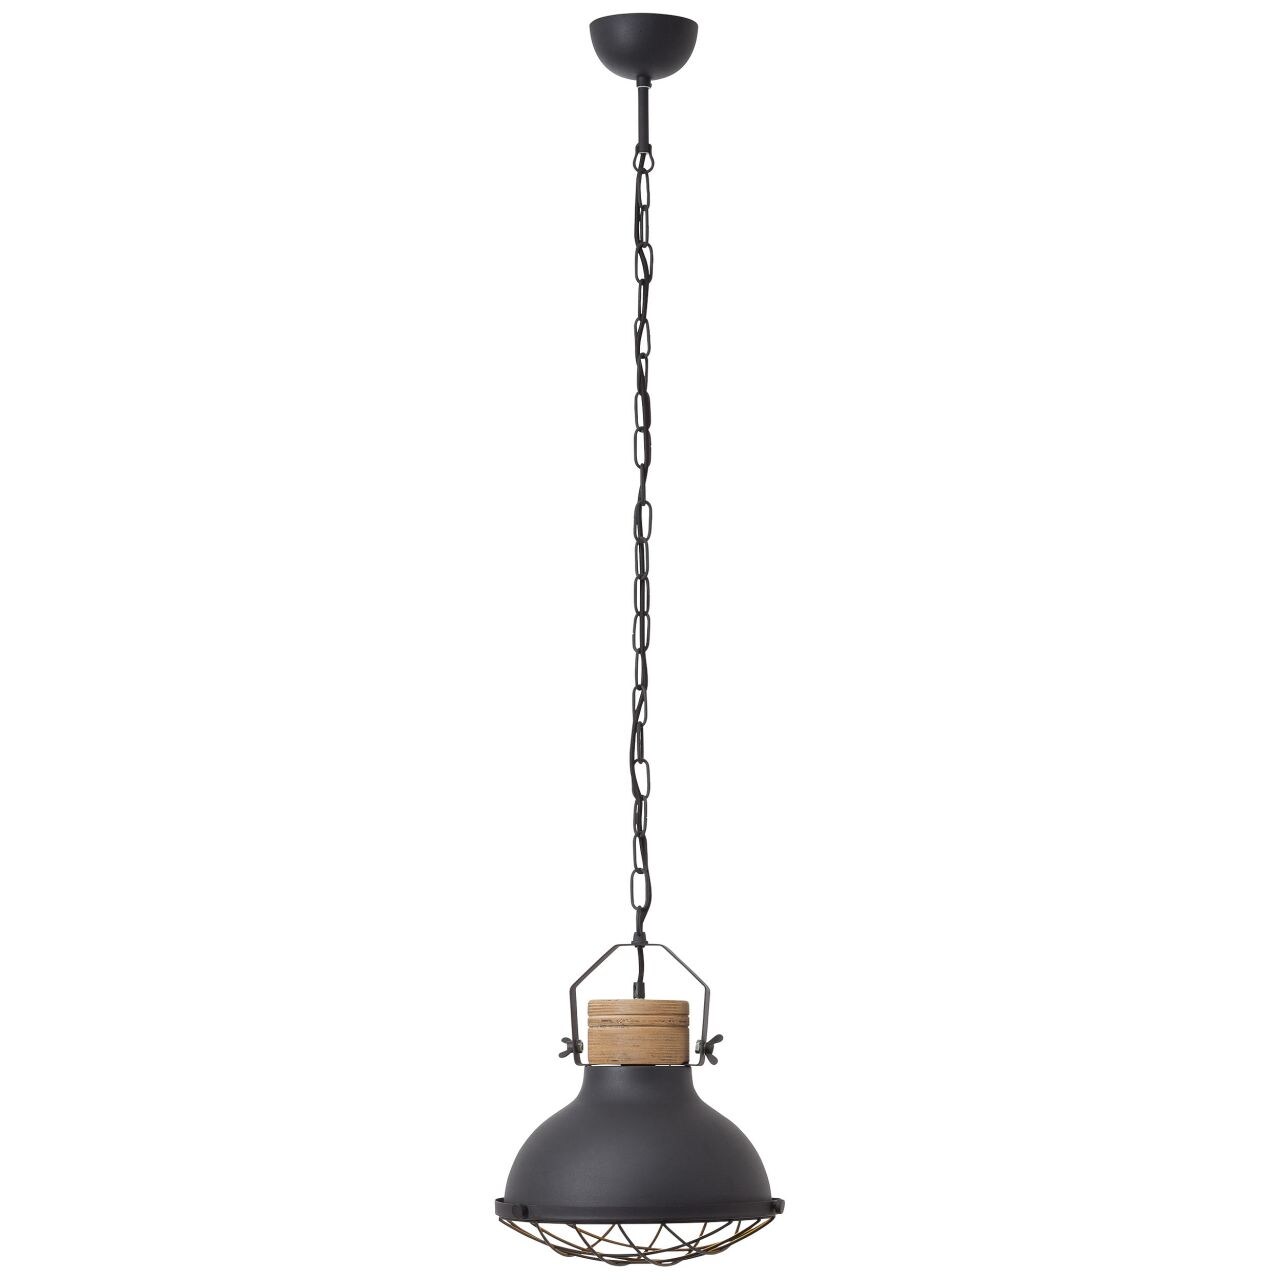 BRILLIANT Lampe Emma Pendelleuchte 33cm schwarz korund   1x A60, E27, 40W, g.f. Normallampen n. ent.   Die Kette ist kür